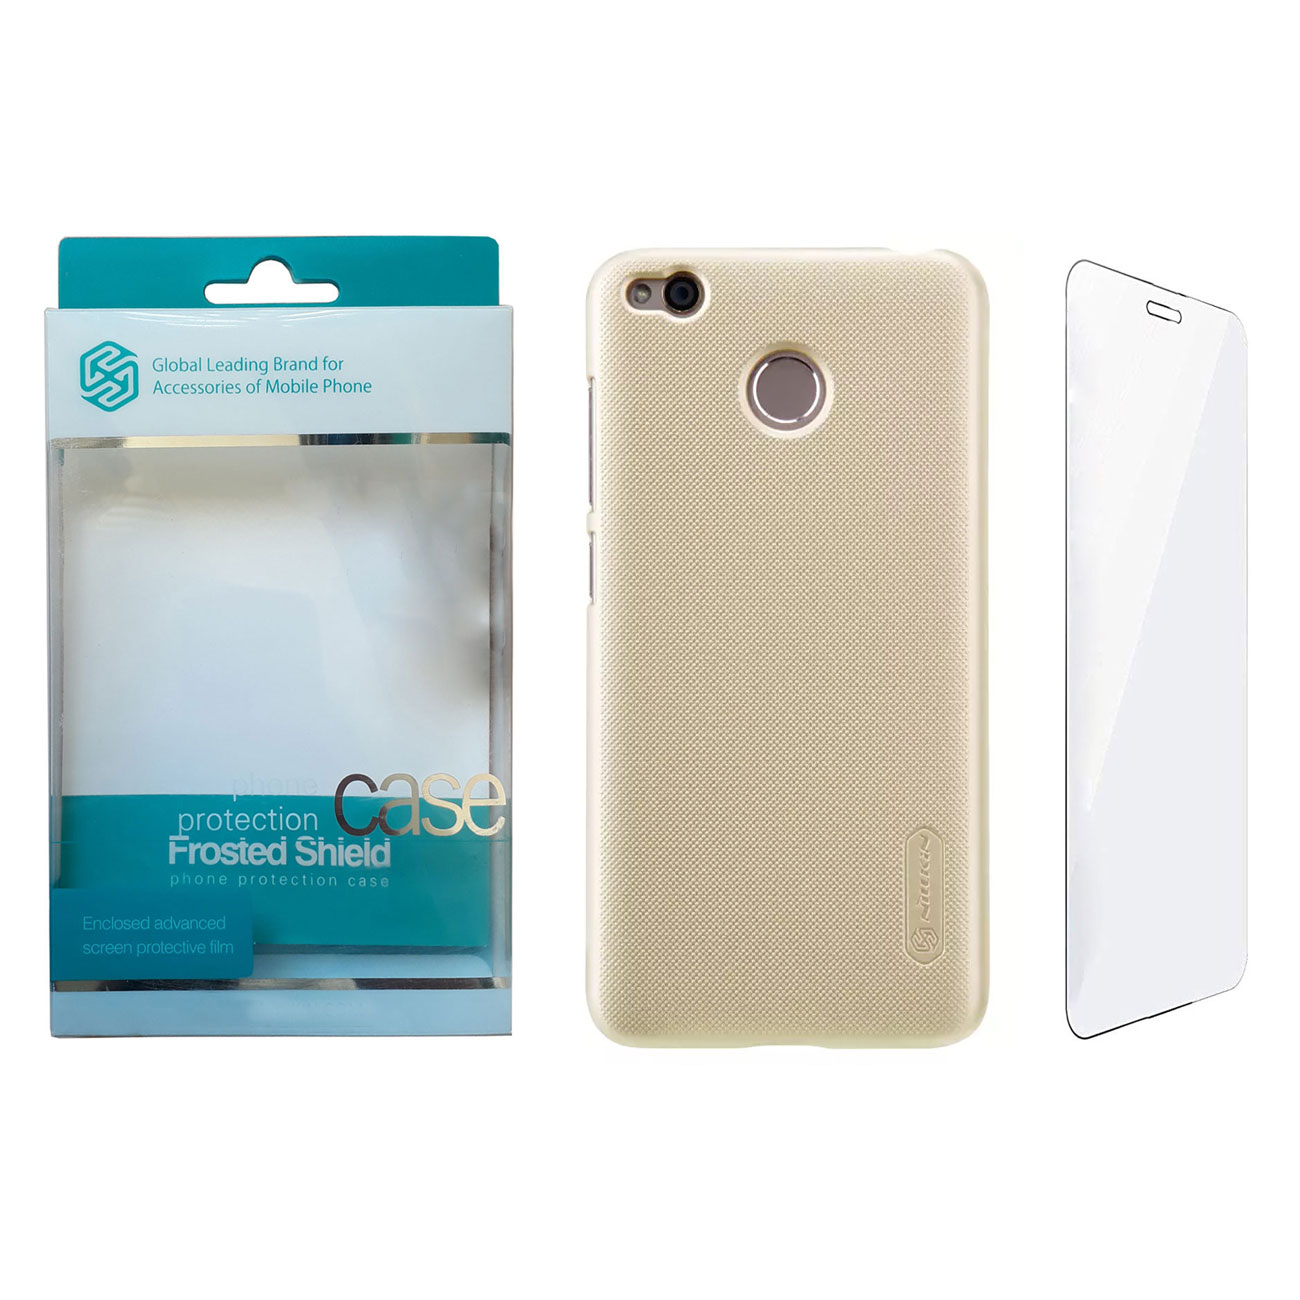 کاور نیلکین مدل Frosted Shield کد S9508 مناسب برای گوشی موبایل شیائومی Redmi 4X به همراه محافظ صفحه نمایش